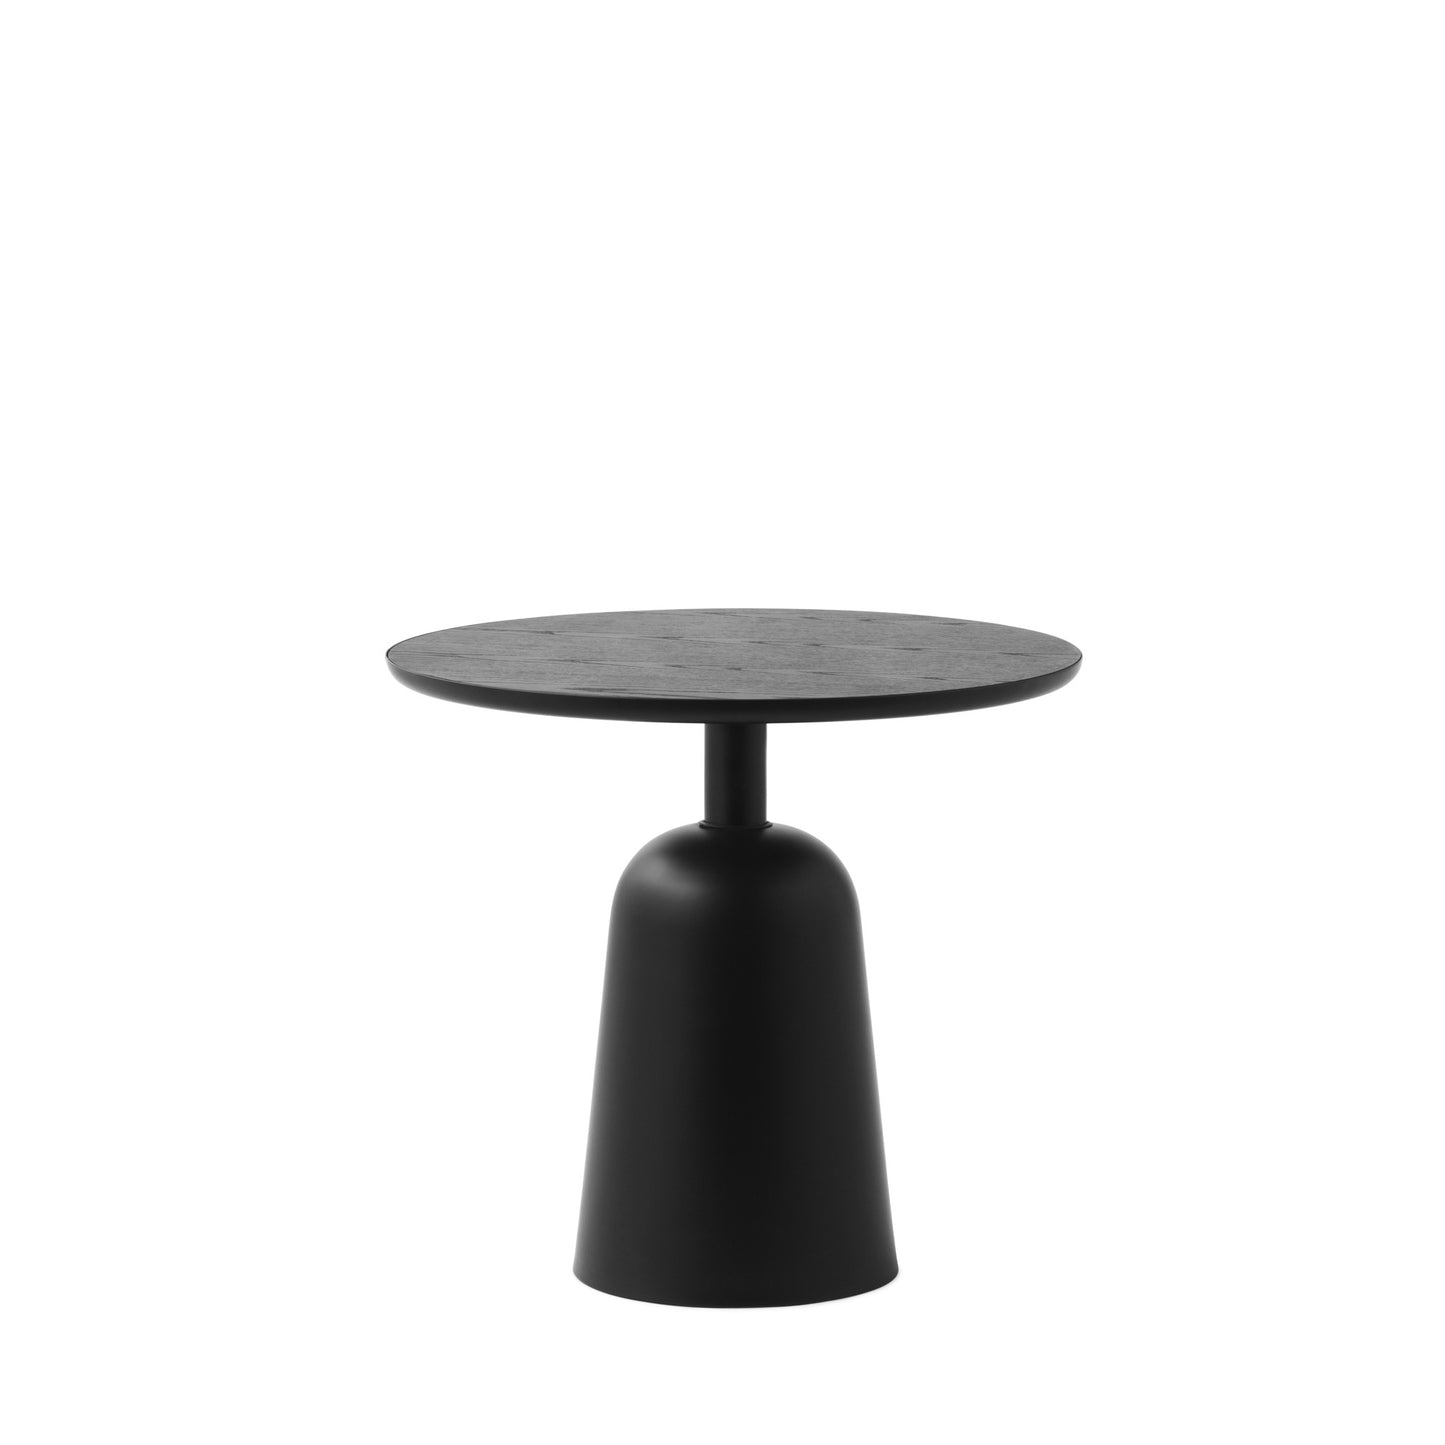 Turn Table by Normann Copenhagen #Black